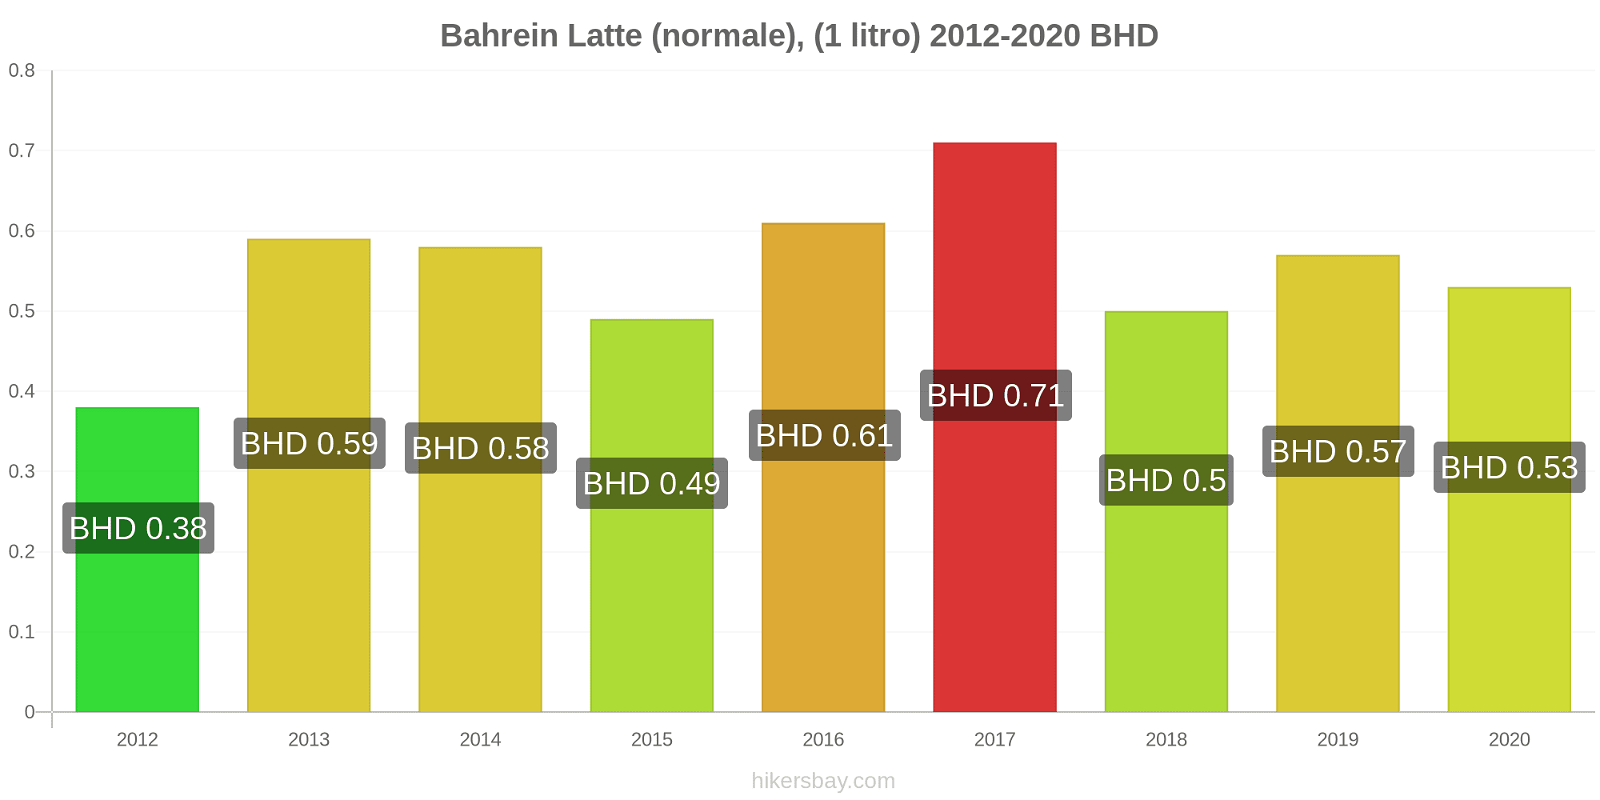 Bahrein variazioni di prezzo Latte (1 litro) hikersbay.com